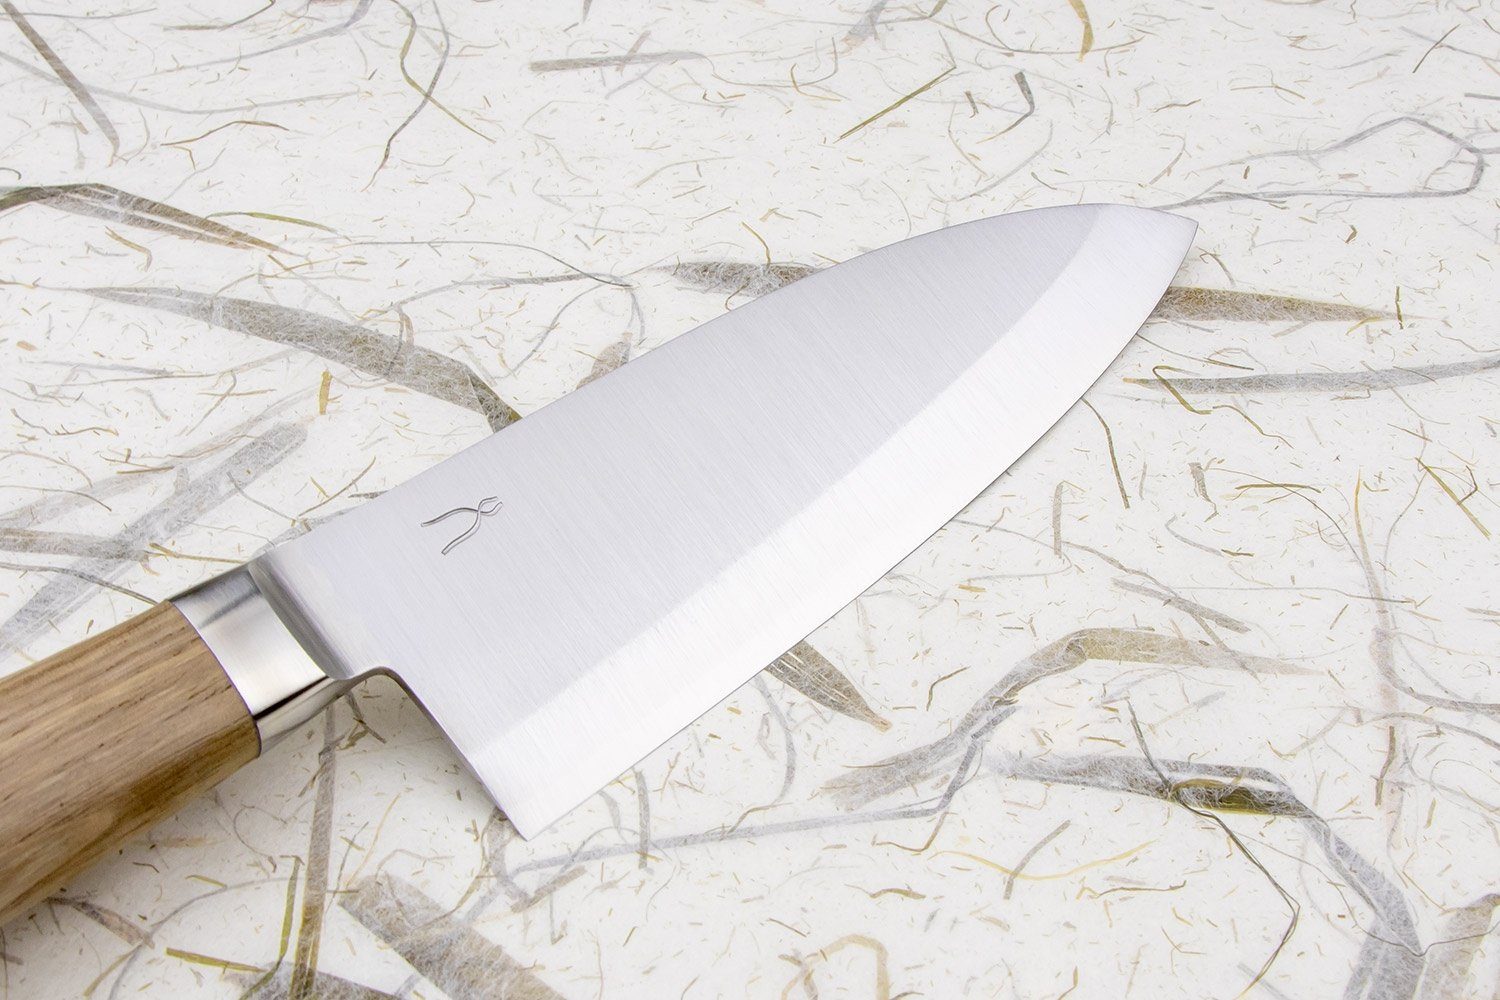 Ko Deba Knife (Small Deba)